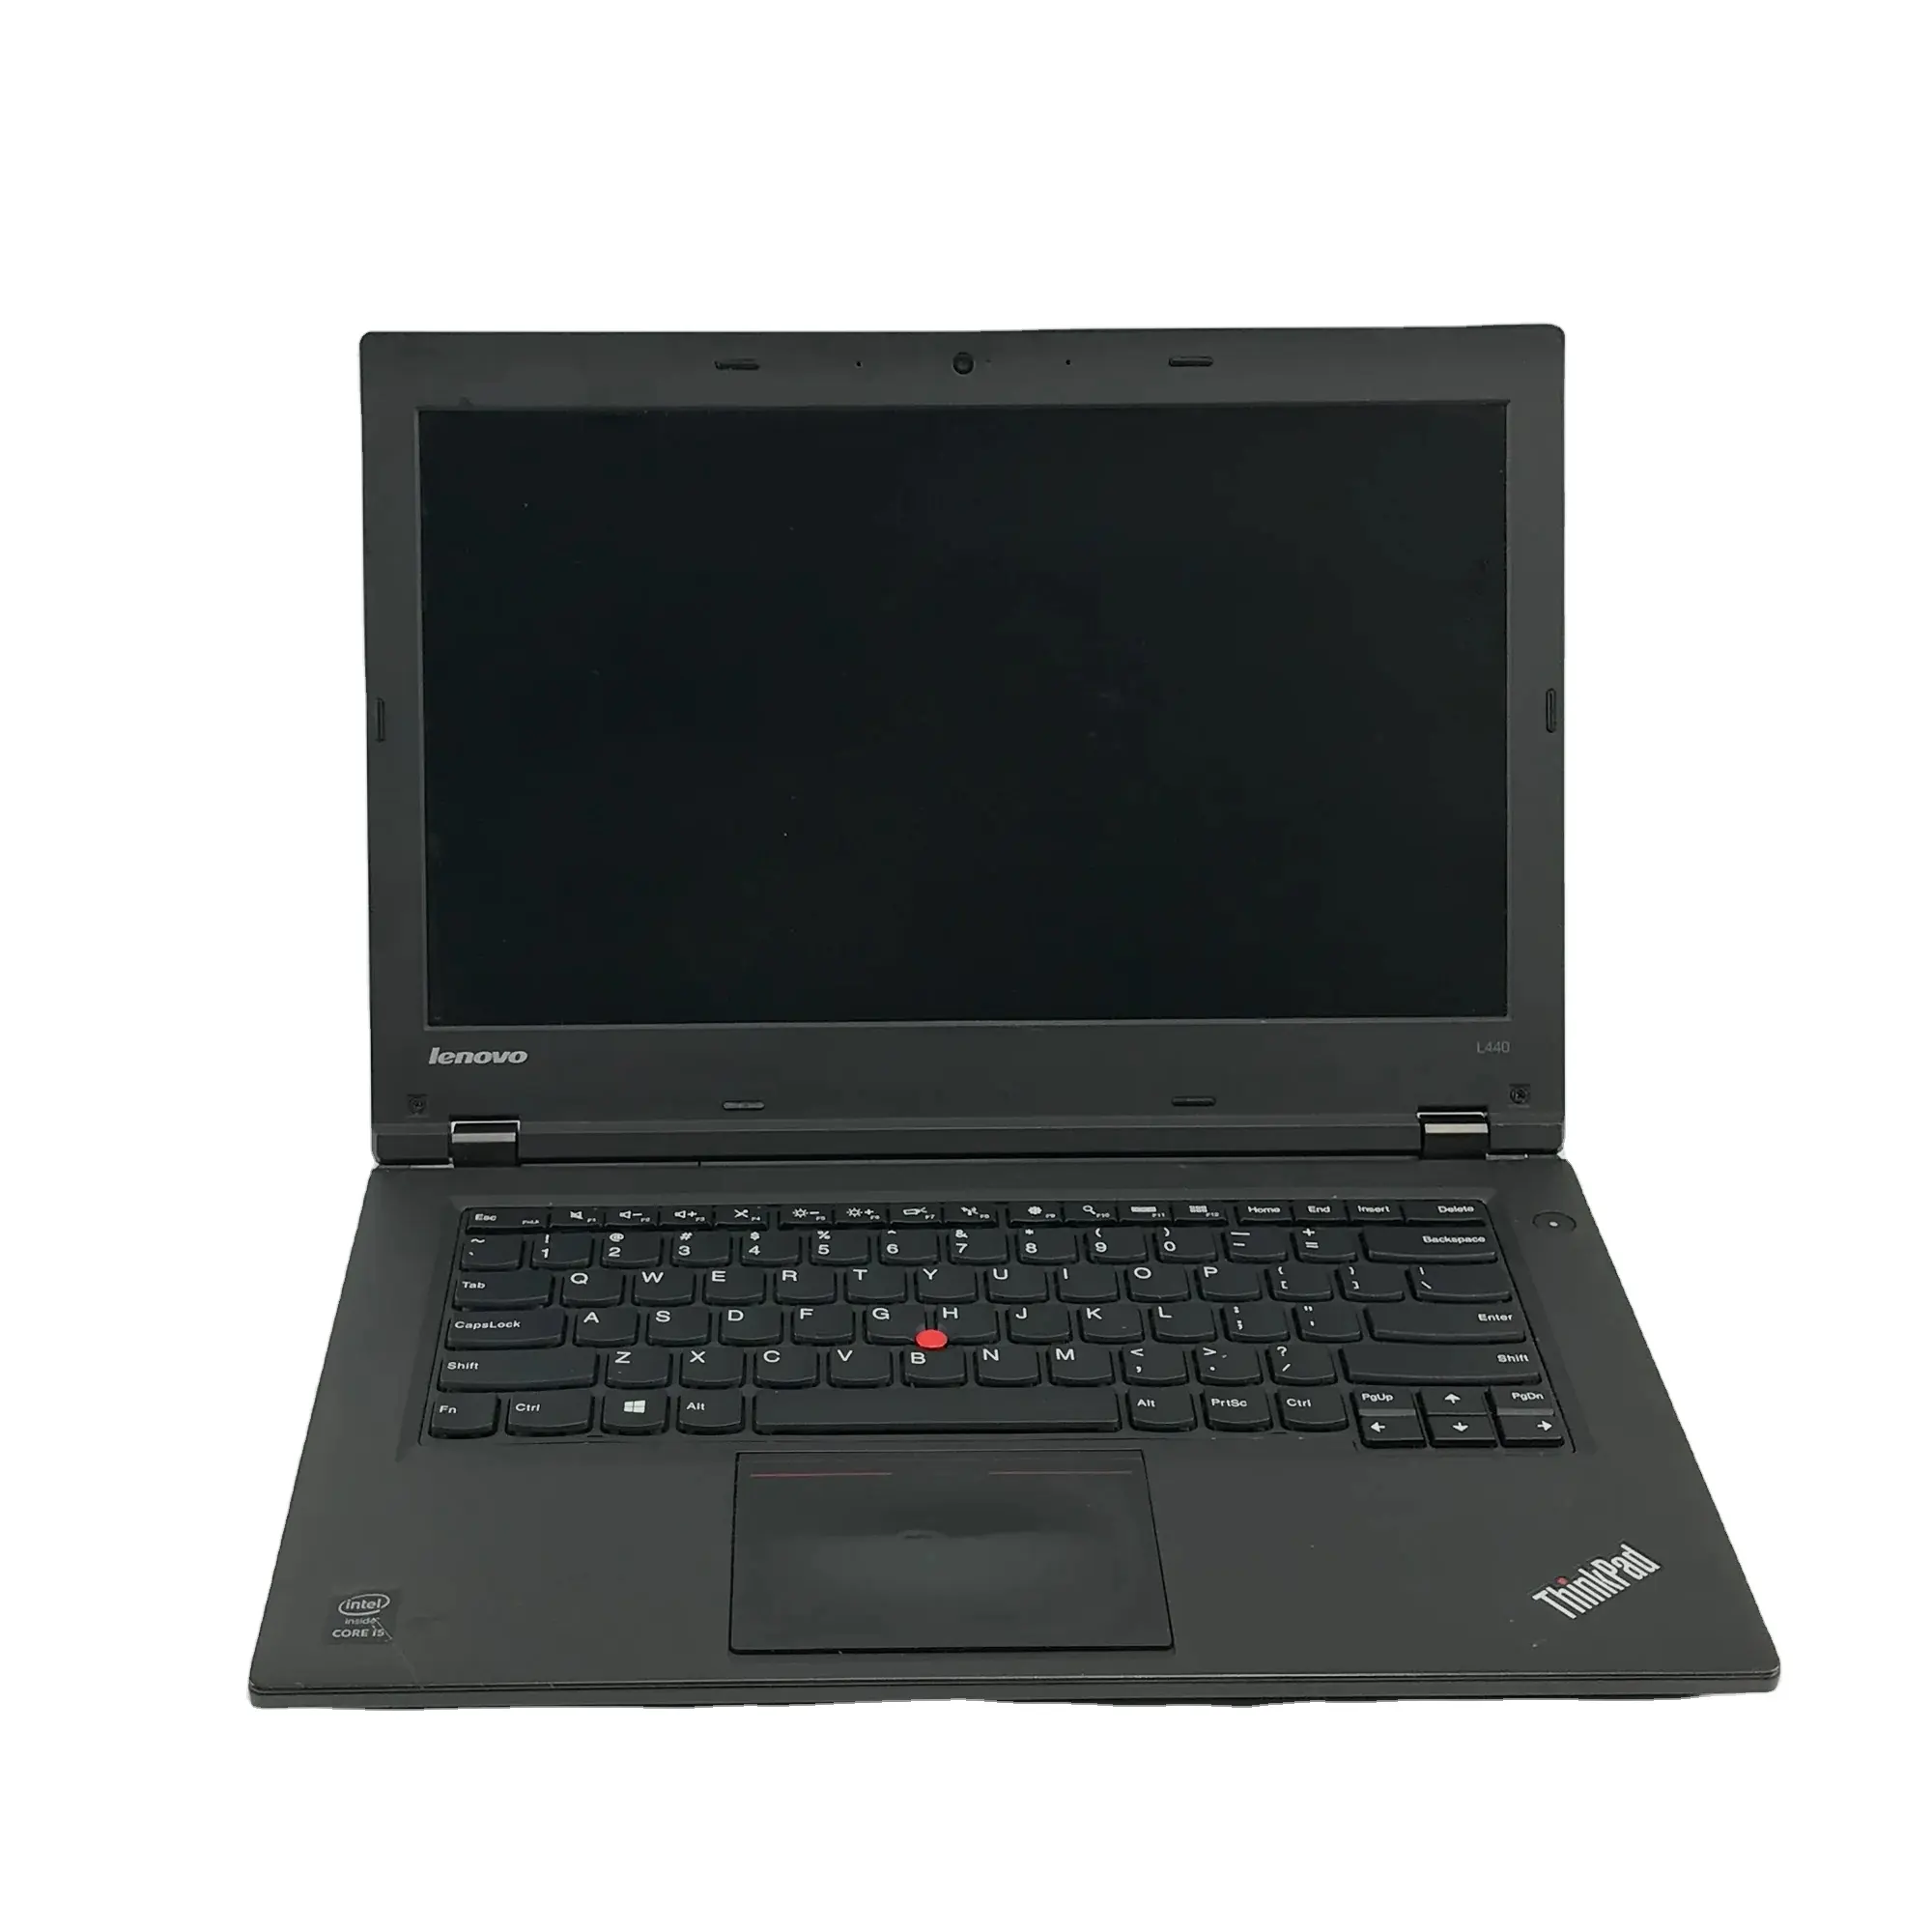 ThinkPad L440 de 14 "GHz y 2,6, 4GB de RAM, 500GB de HDD, portátiles ideales para las mejores opciones informáticas de EE. UU., el mejor acondicionado